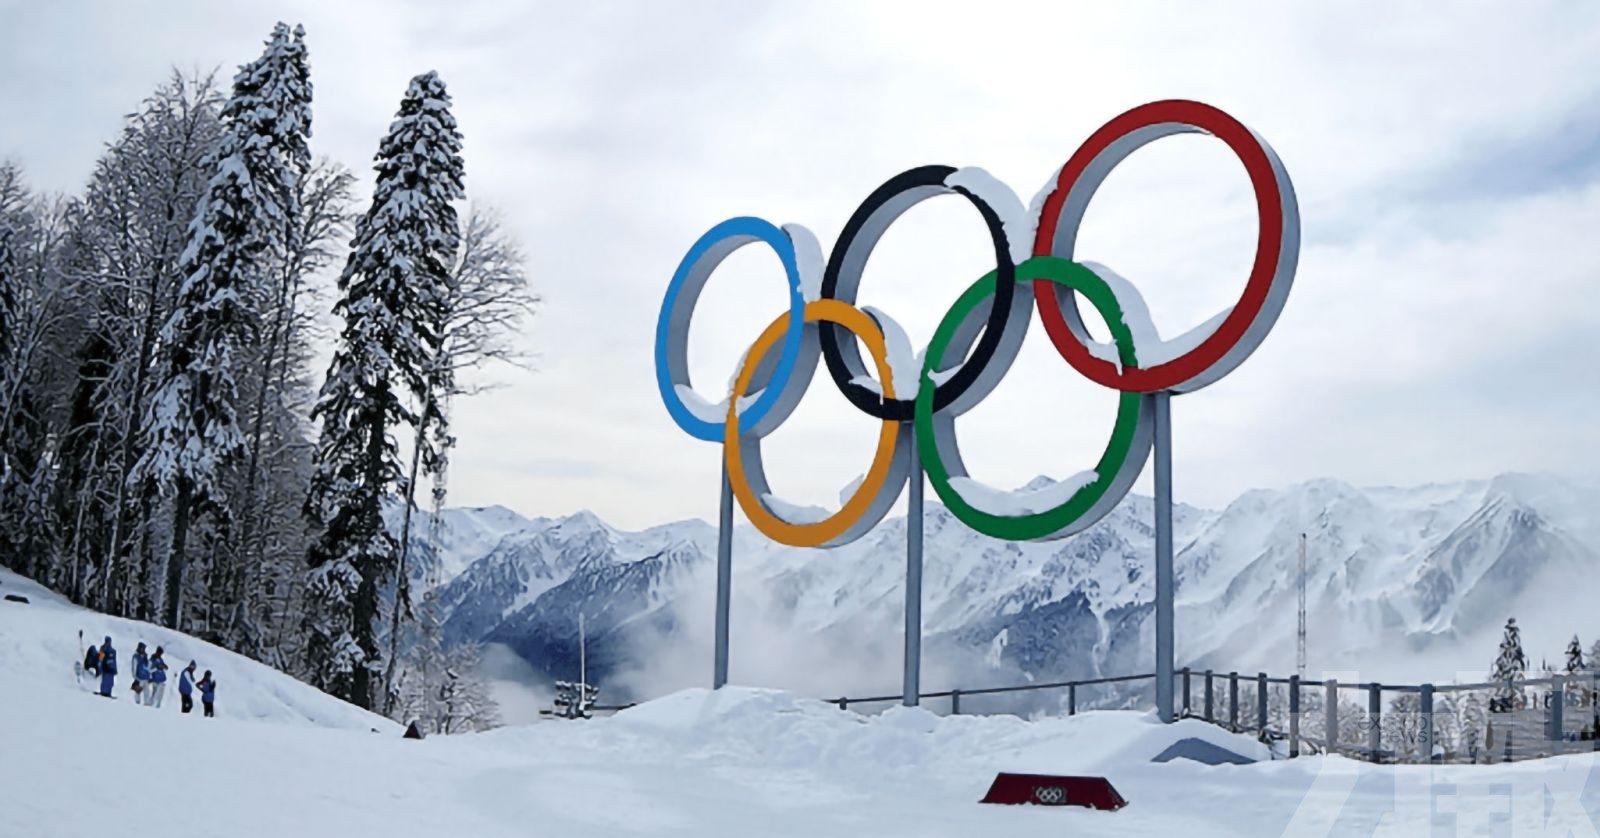 共迎中日邦交正常化50周年 日本官員及友好人士同祝北京冬奧會成功　